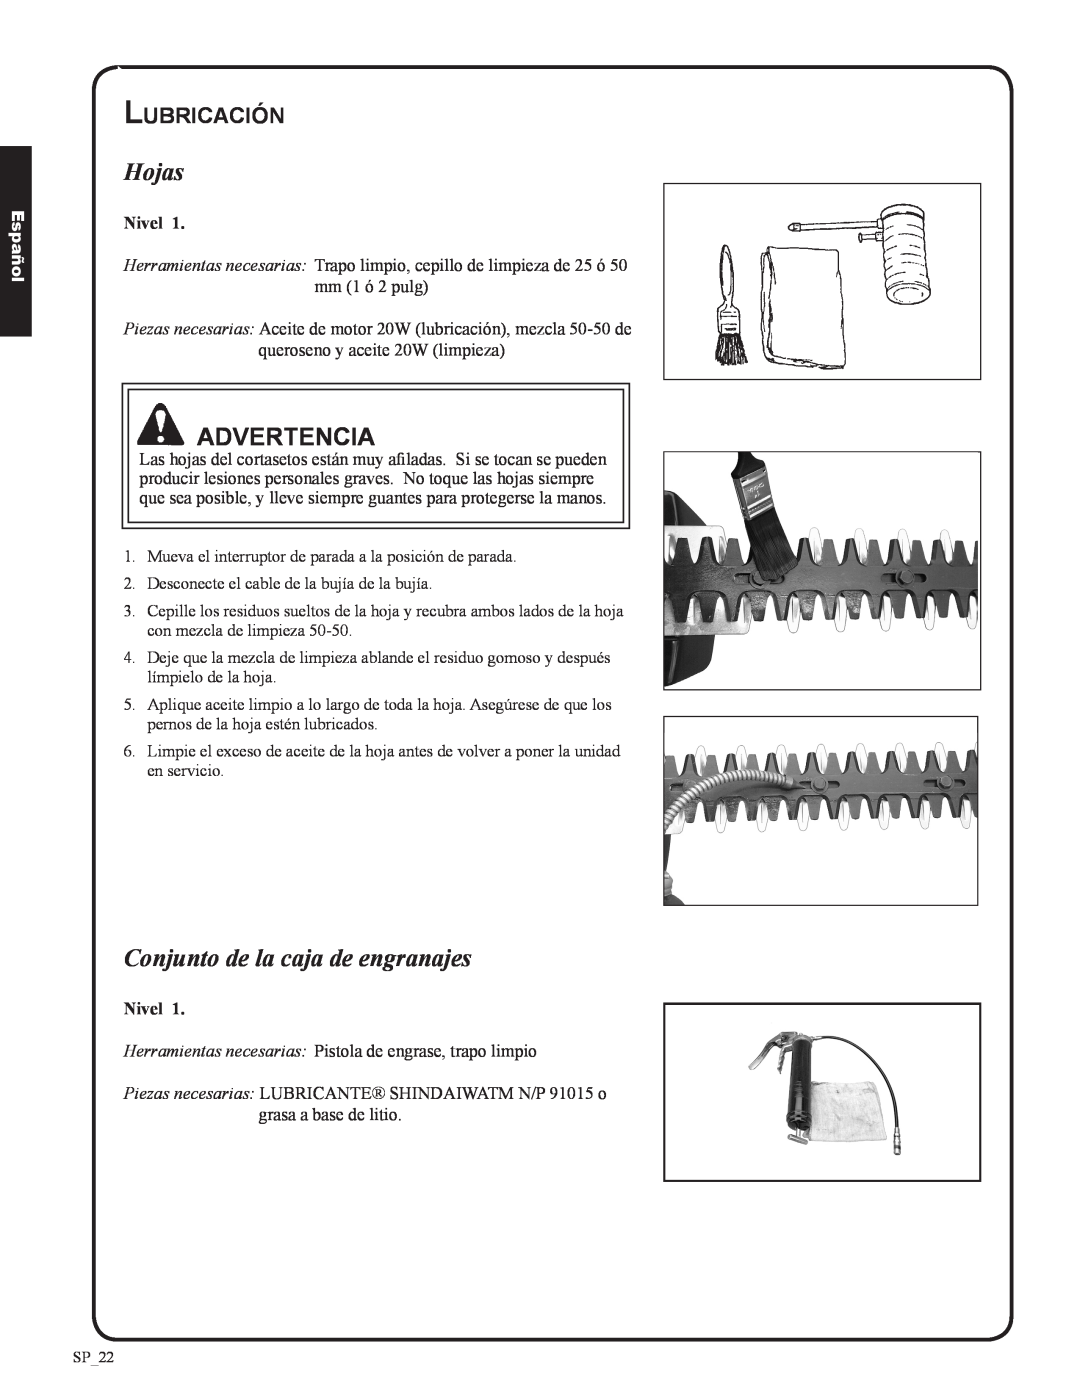 Shindaiwa DH212, 82053 manual Hojas, Conjunto de la caja de engranajes, Lubricación, Advertencia, Español 